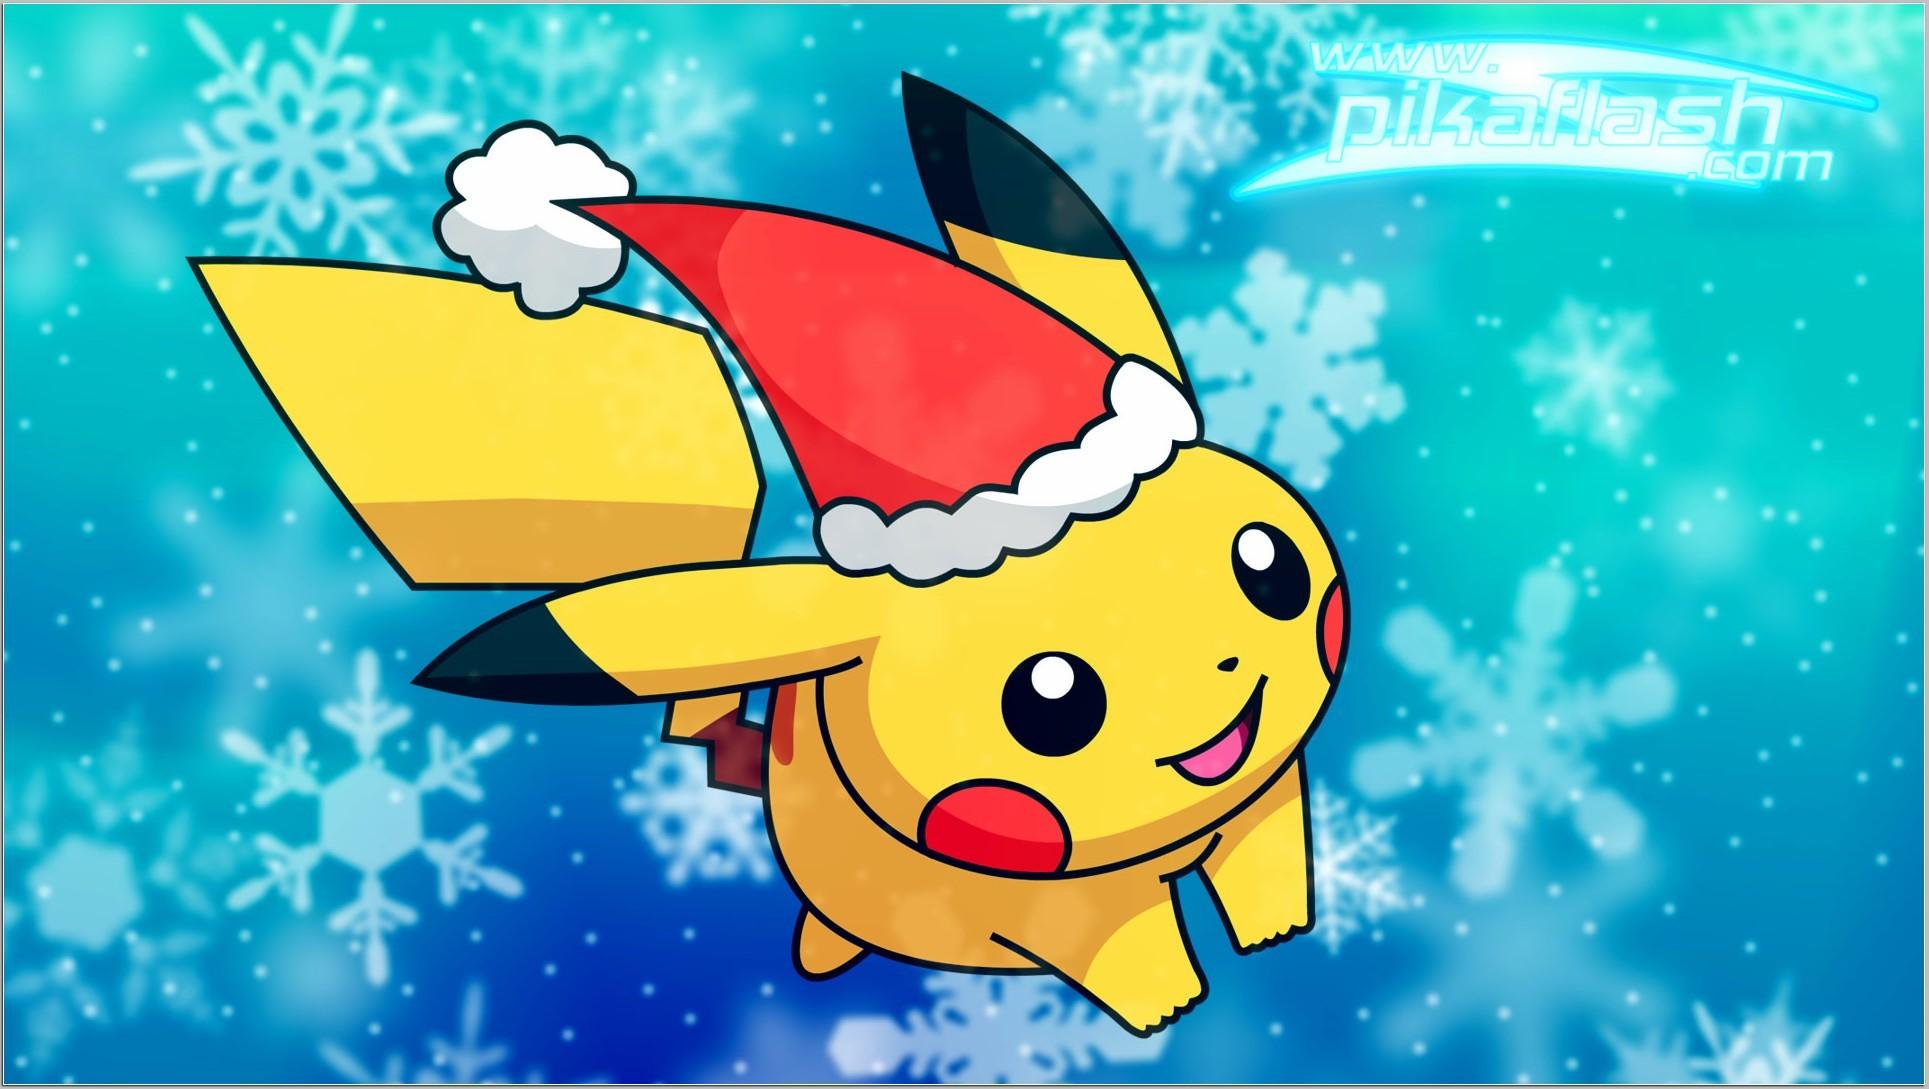 Cute Pikachu Wallpaper background picture